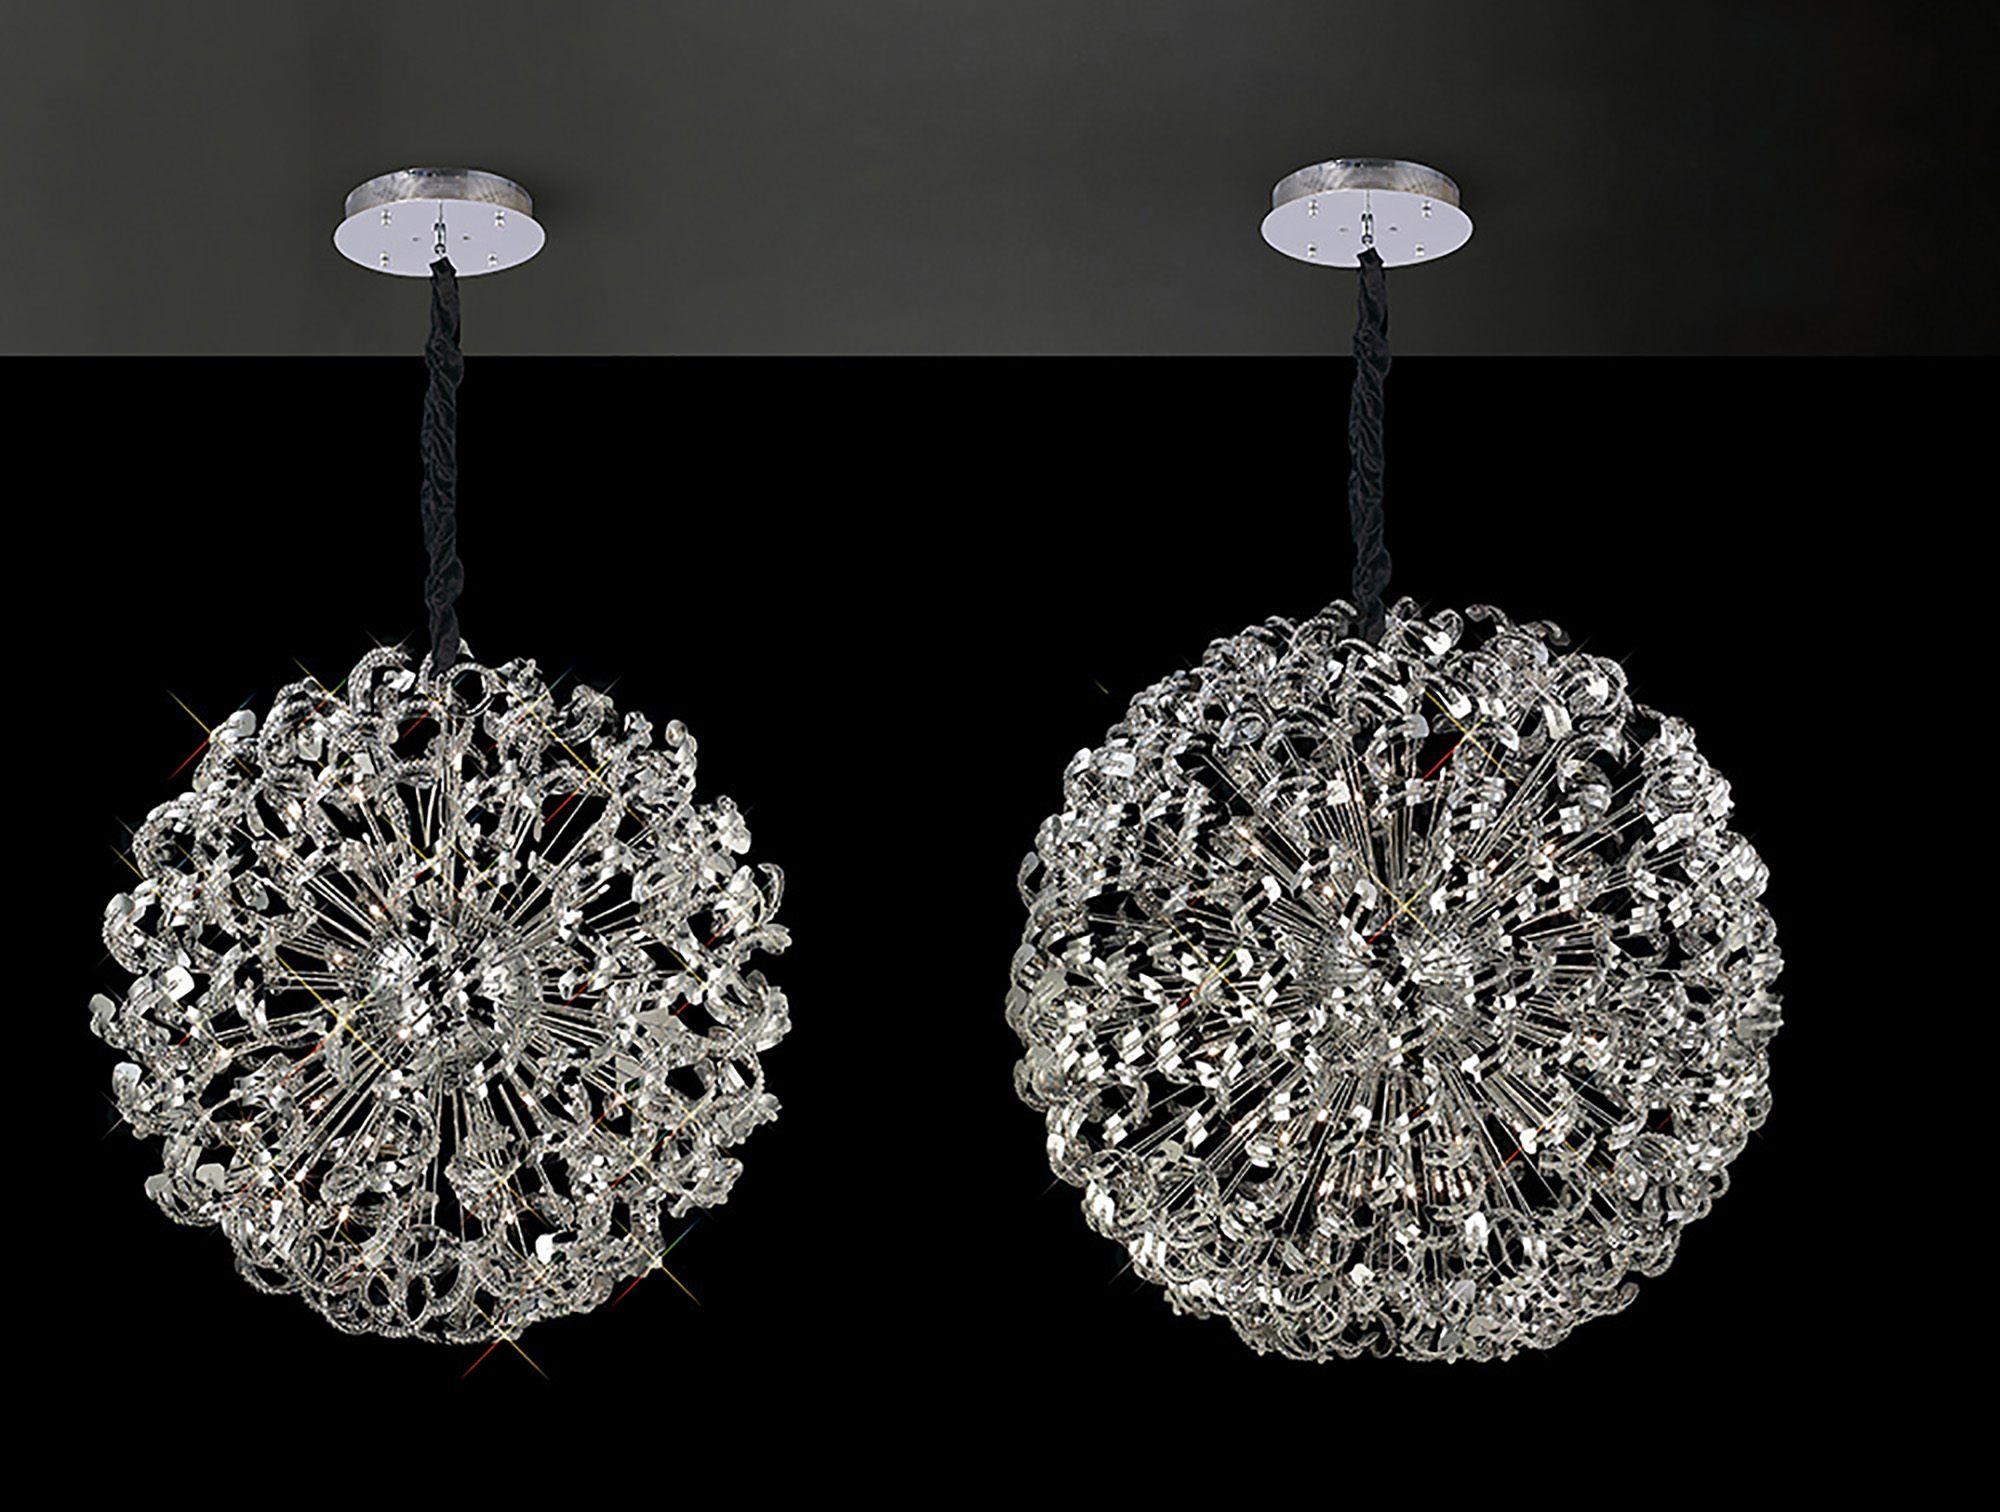 Esme Crystal Ceiling Lights Diyas Modern Chandeliers